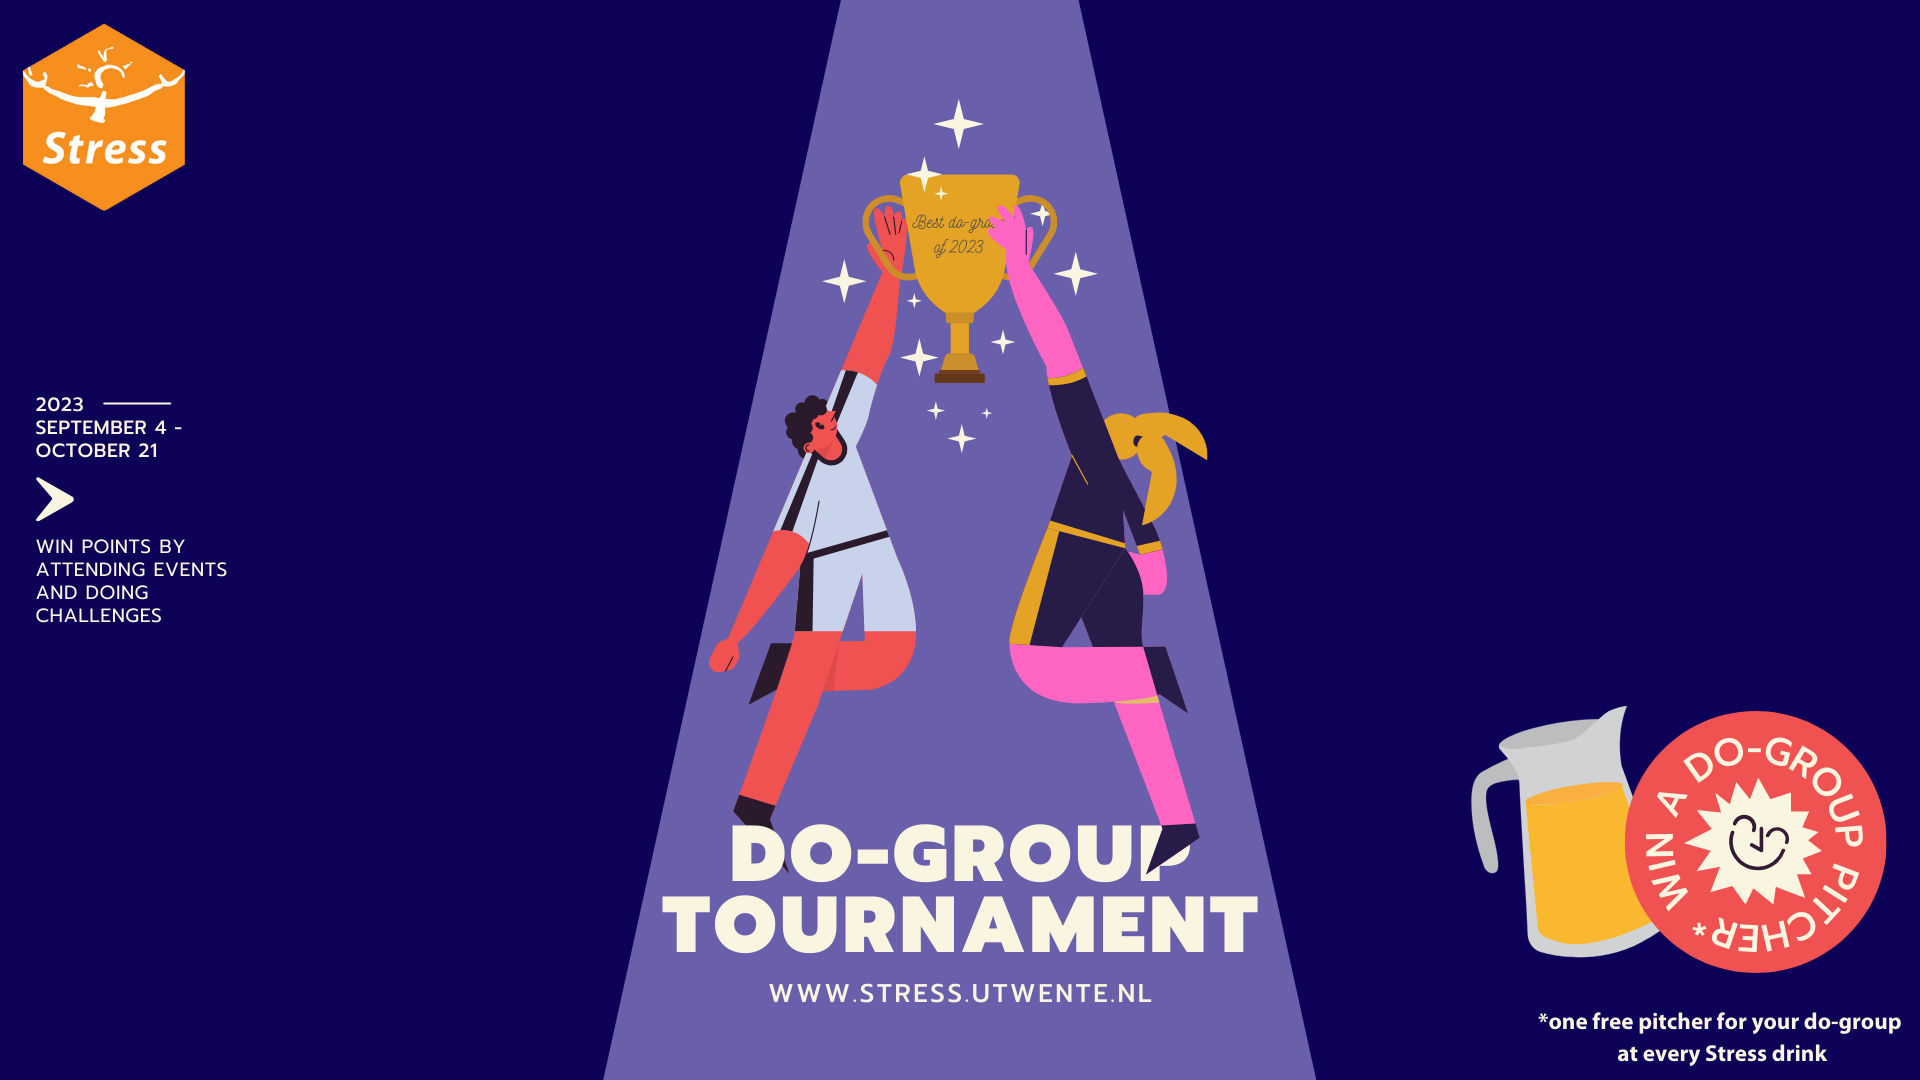 Do-group tournament